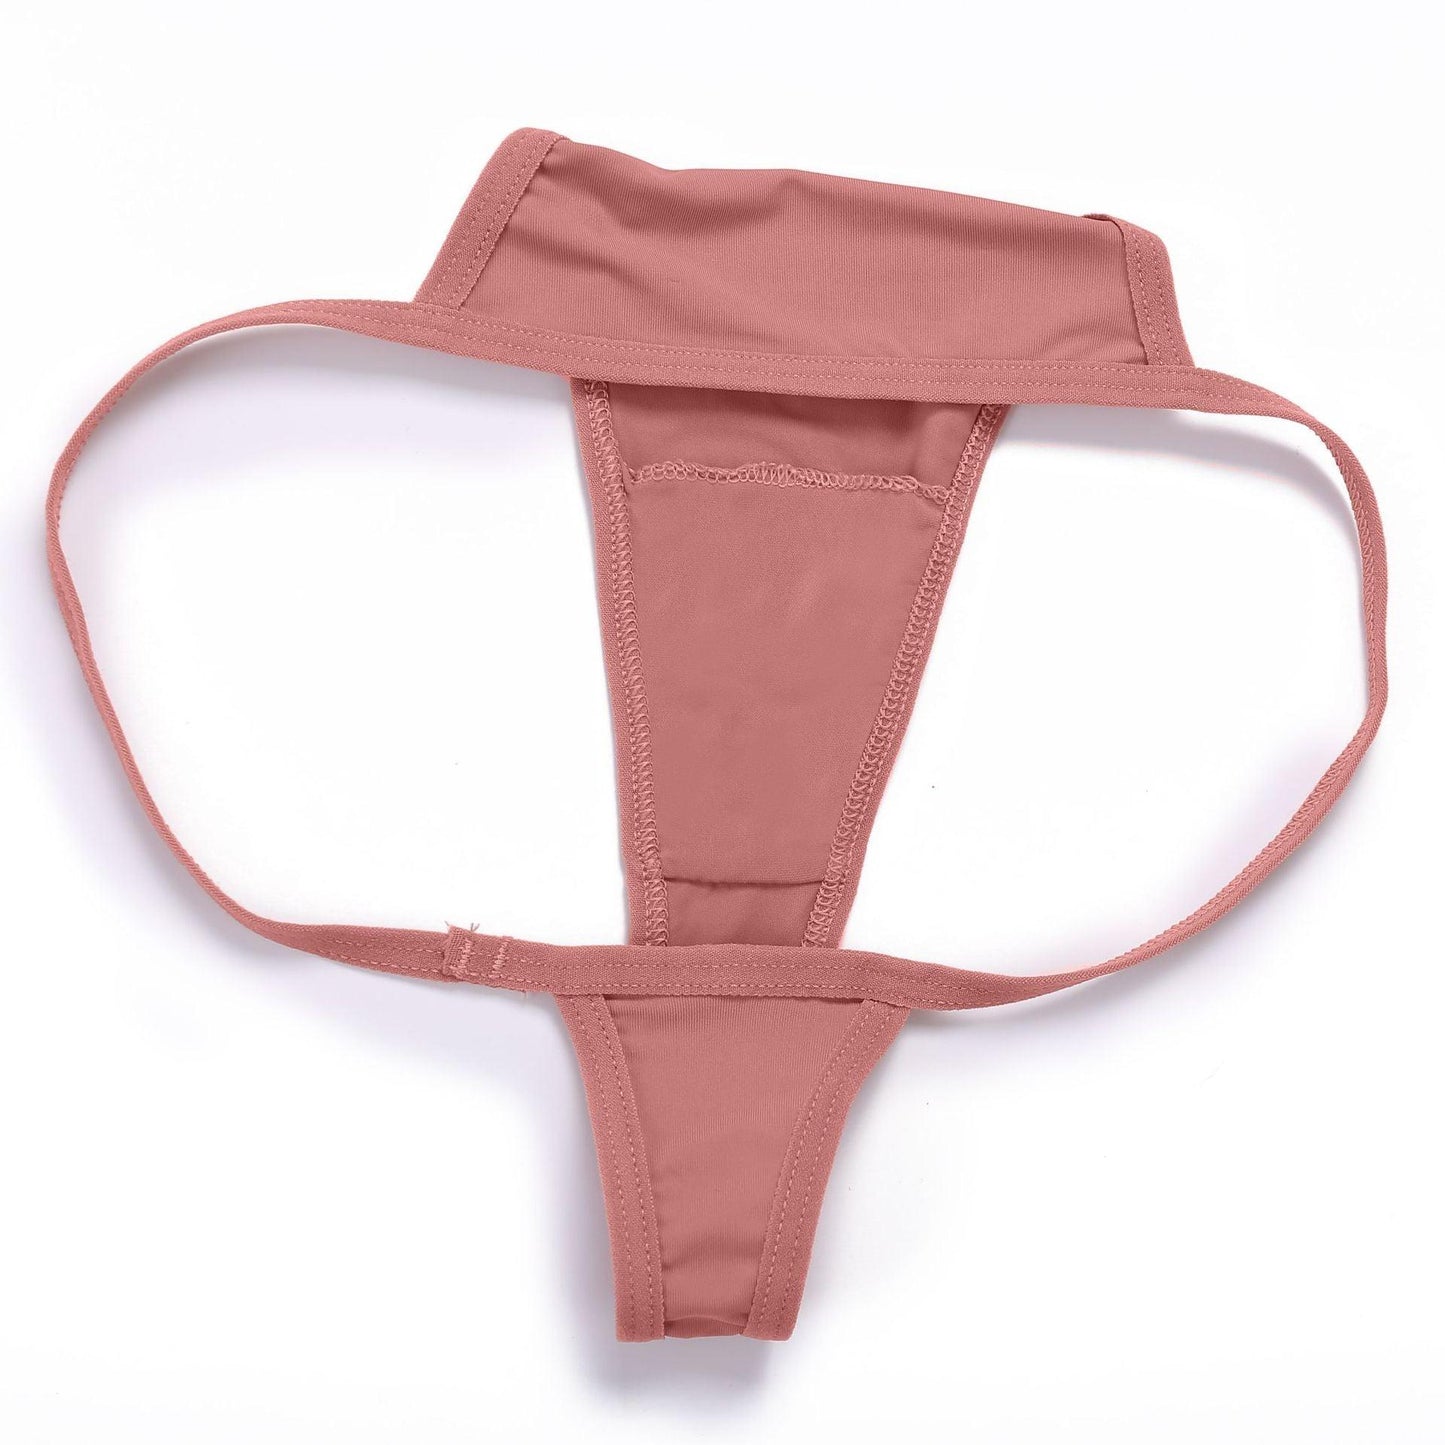 Sexy Cotton Thong for Women - ForVanity underwear, women's lingerie Underwear